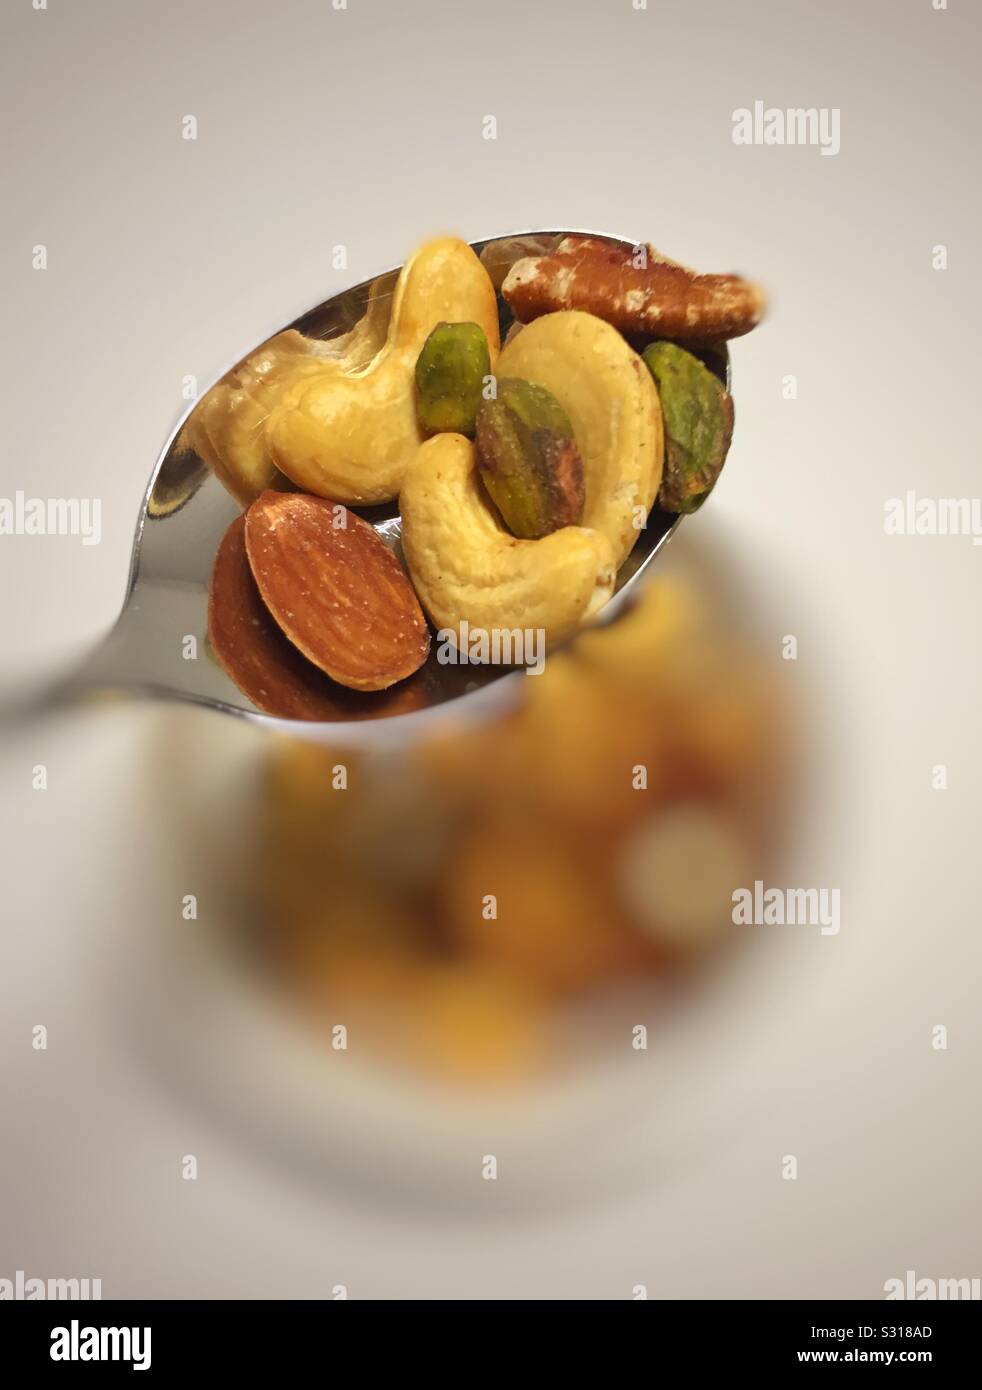 Cuillerée de noix mélangées. Les cajous, amandes, pistaches et noix de pécan. Banque D'Images